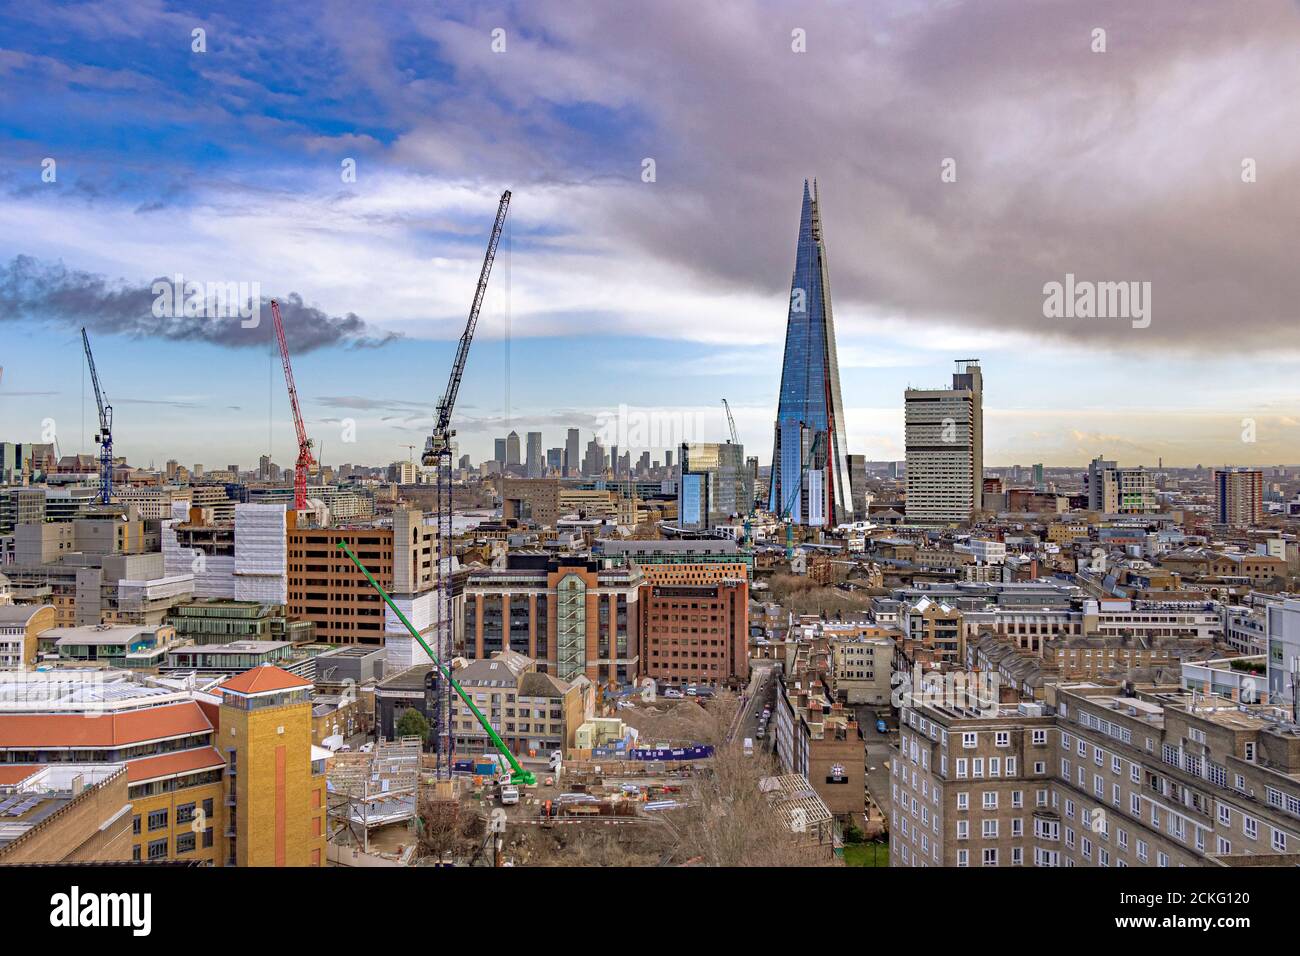 Ein Blick über einen Teil des Londoner Stadtteils Southwark mit dem Shard und dem Guy's Hospital nebeneinander, London, Großbritannien Stockfoto